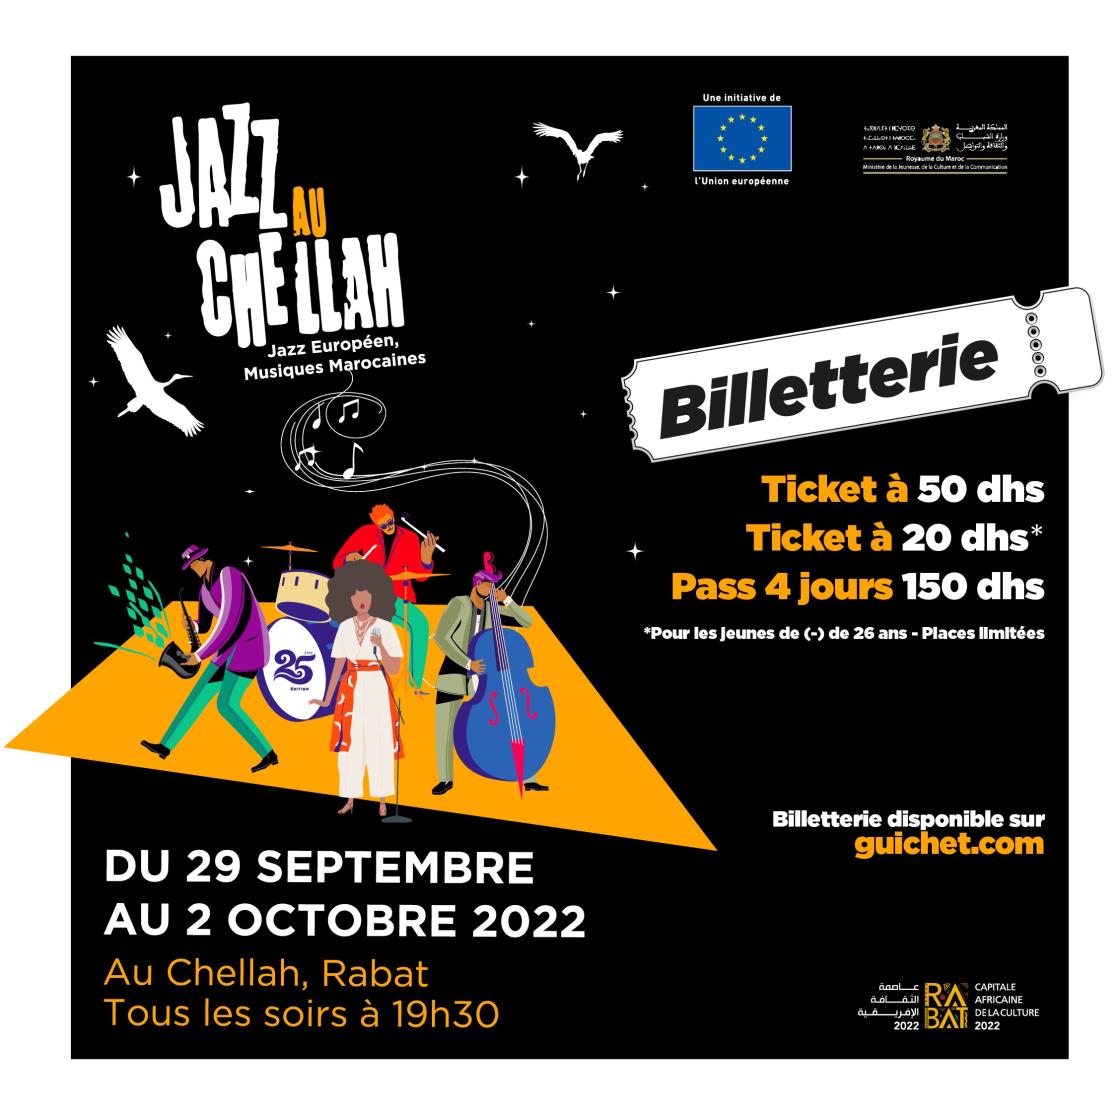 Visuel avec des informations sur la billetterie du festival Jazz au Chellah 2022